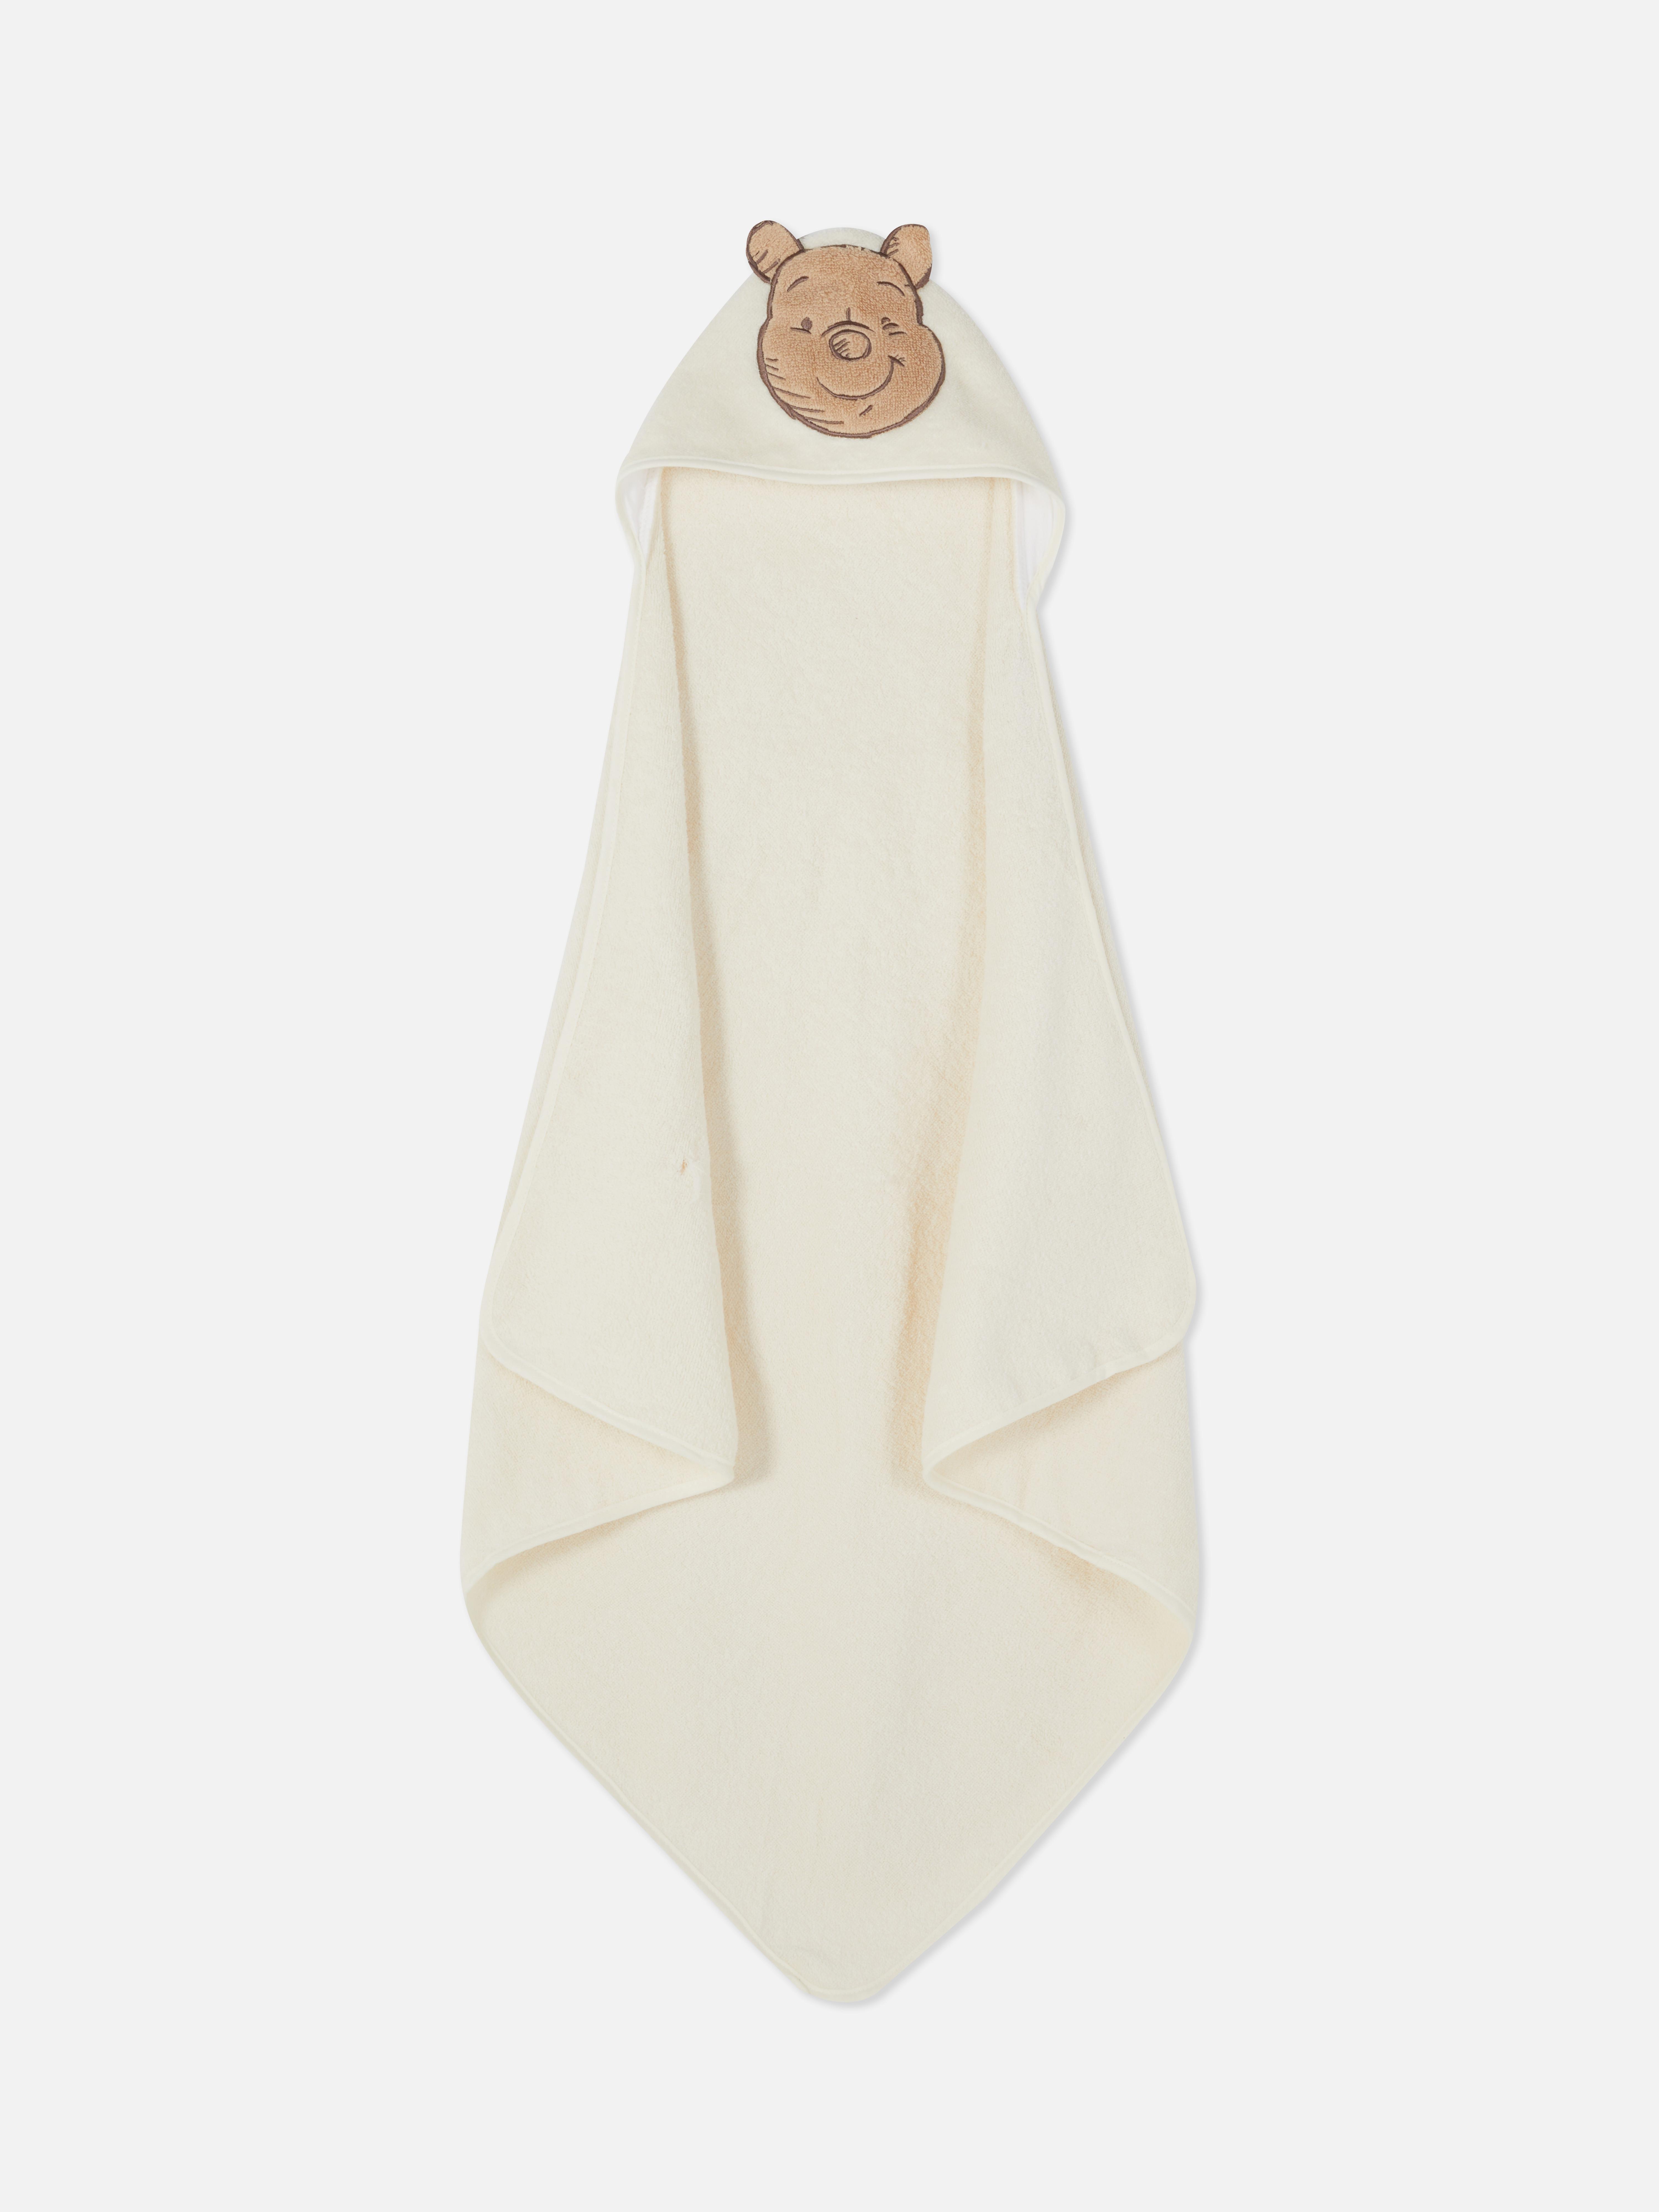 Disney's Winnie The Pooh Hooded Towel